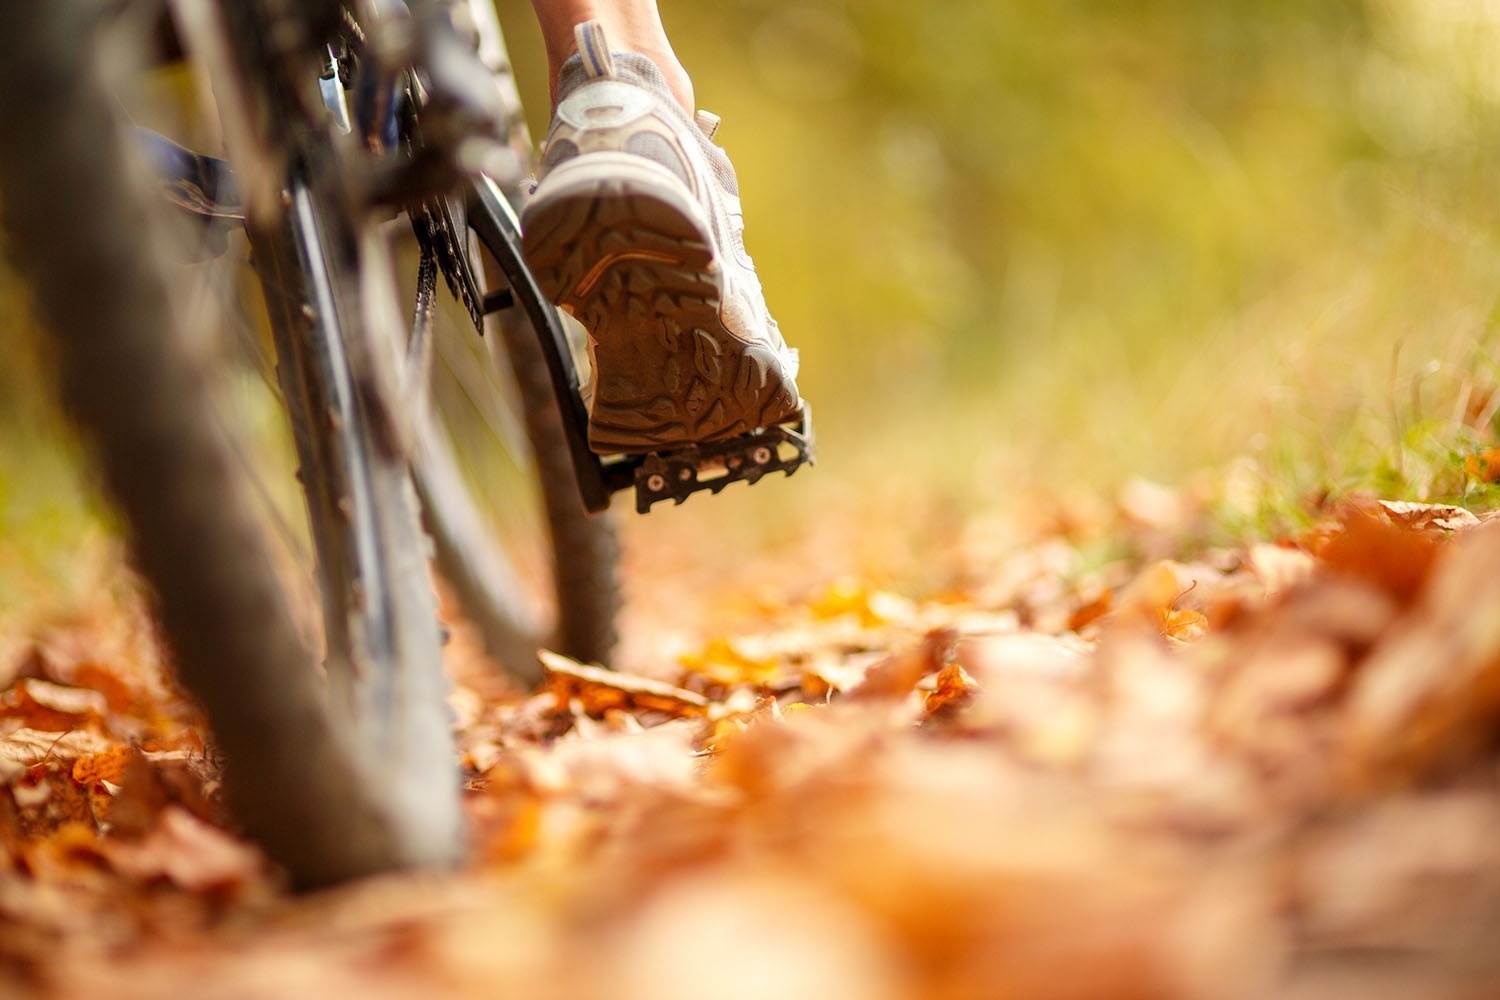 une personne fait du vélo sur un sentier couvert de feuilles d' automne